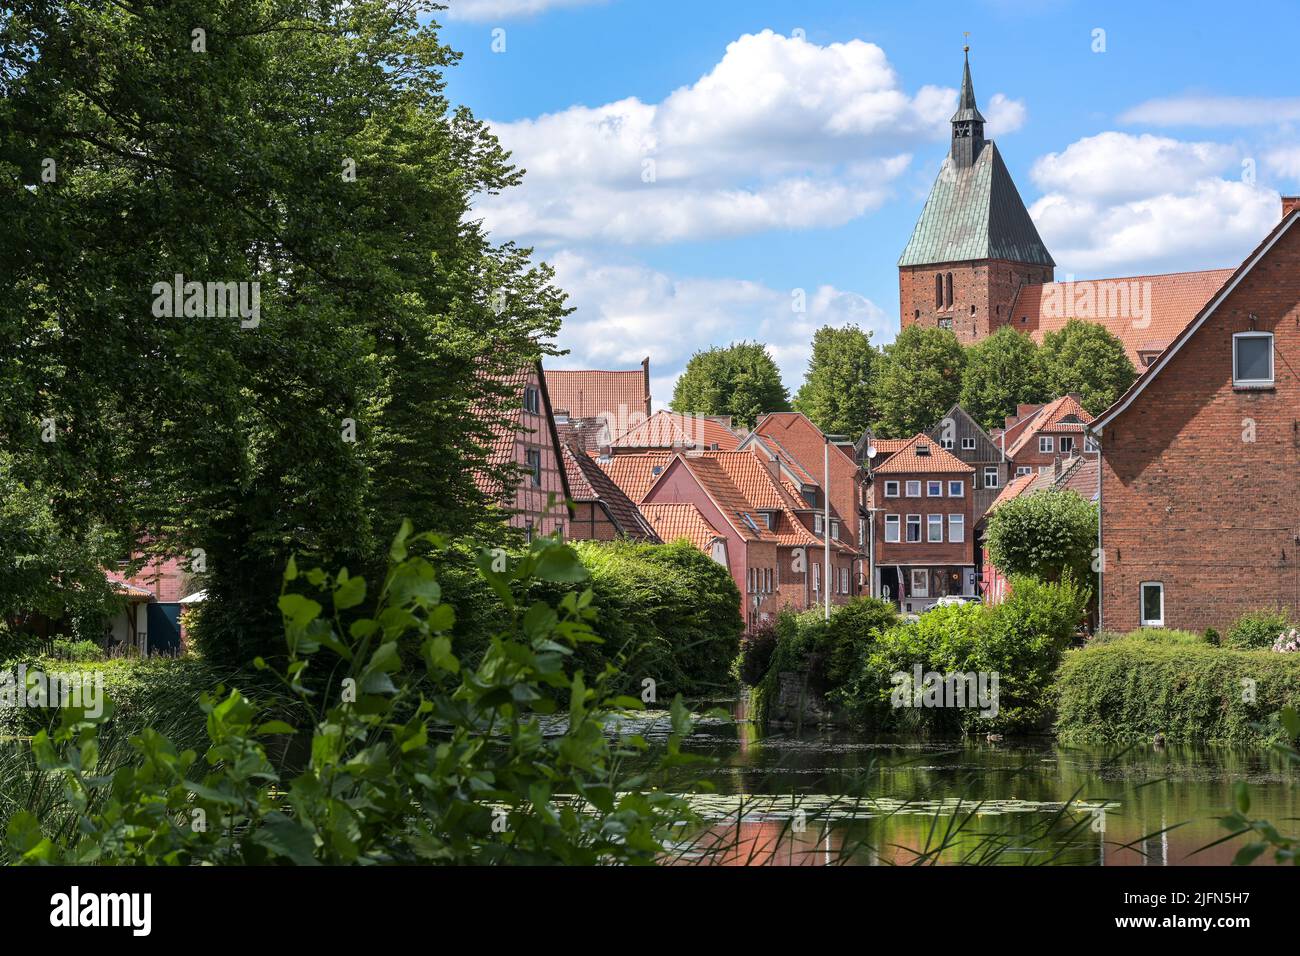 Città vecchia con tipici edifici in mattoni rossi e la chiesa di San Nicola della piccola città medievale Moelln a Schleswig-Holstein, Germania, cielo blu con nuvola Foto Stock